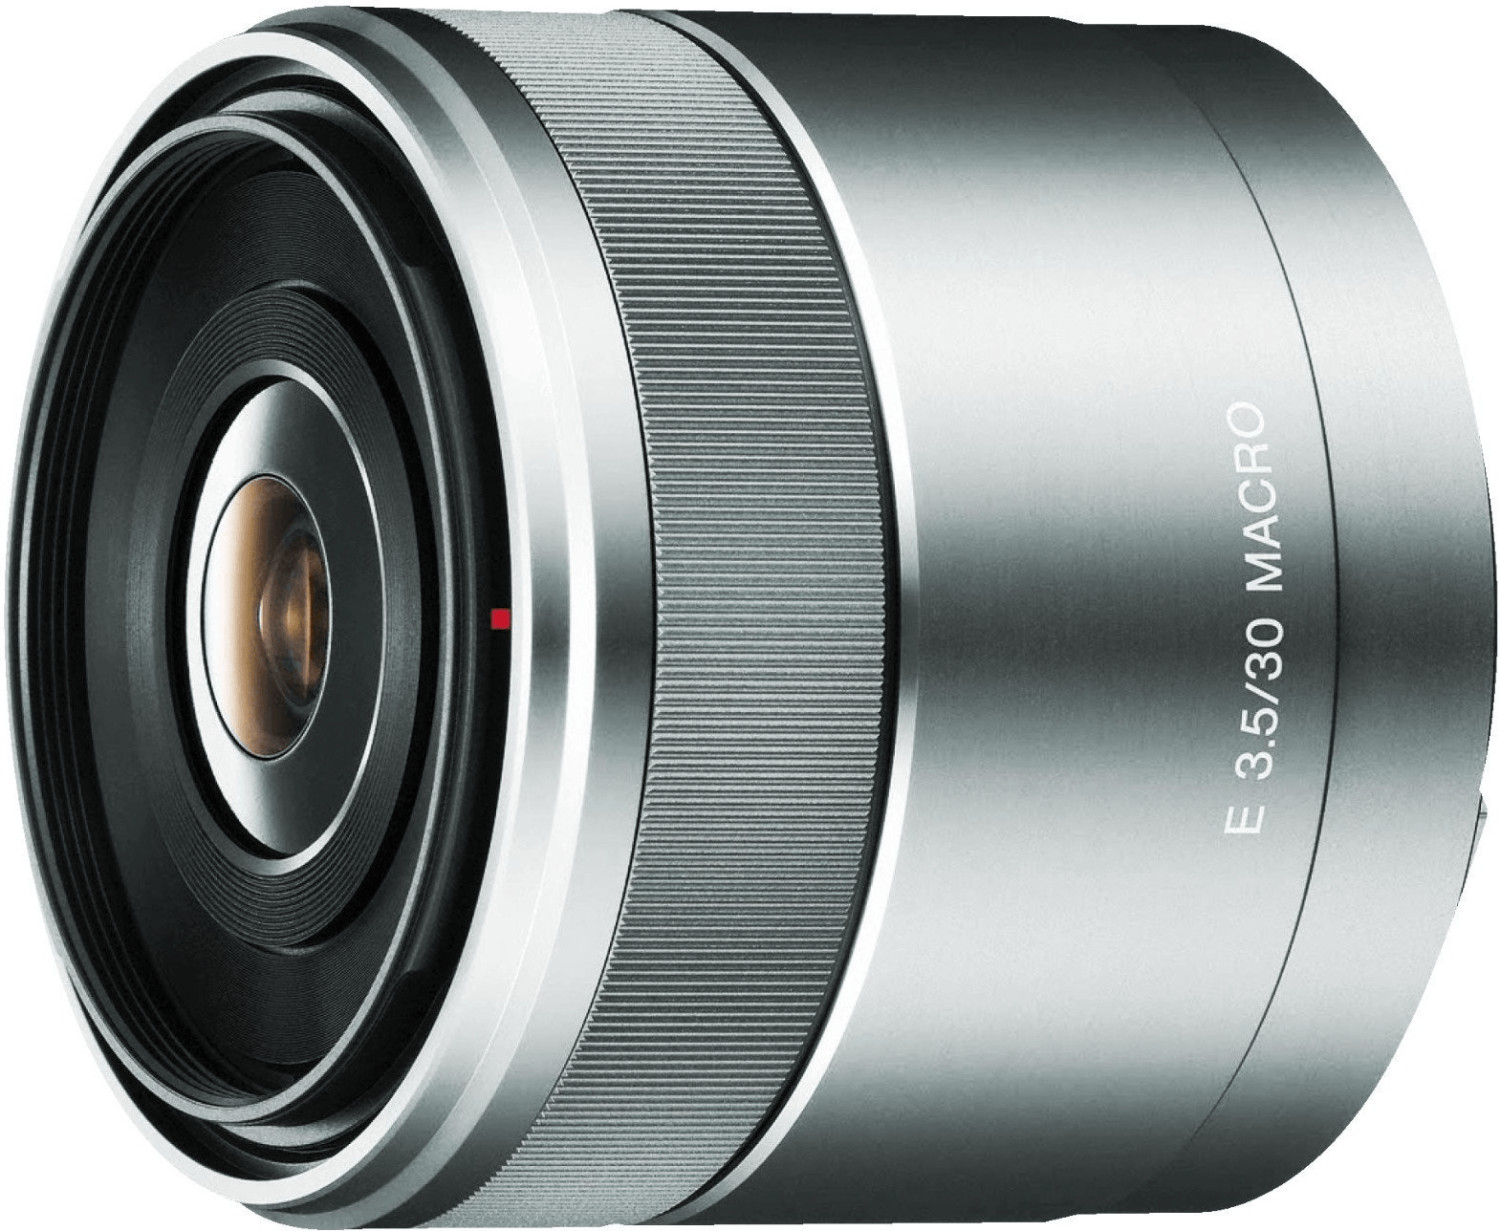 Sony E 30mm f3.5 Macro (SEL30M35) au meilleur prix sur idealo.fr